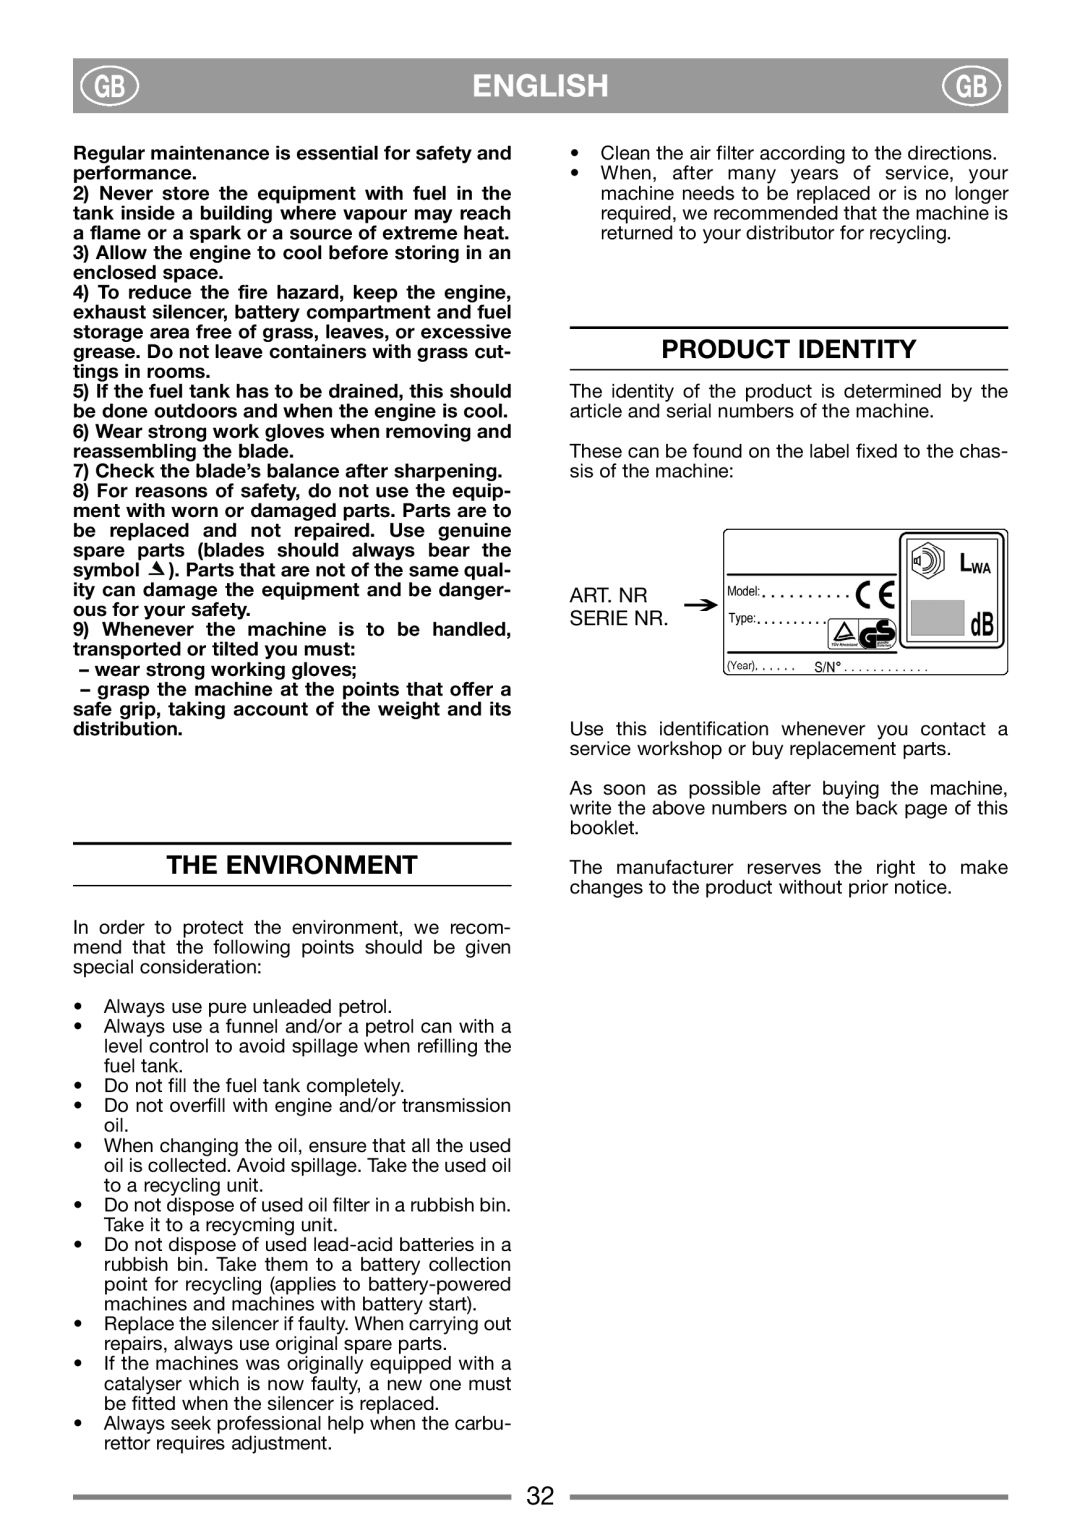 Stiga PRO 48, 48 E, 51 SE manual English, The Environment, Product Identity, Art. Nr, Serie Nr 